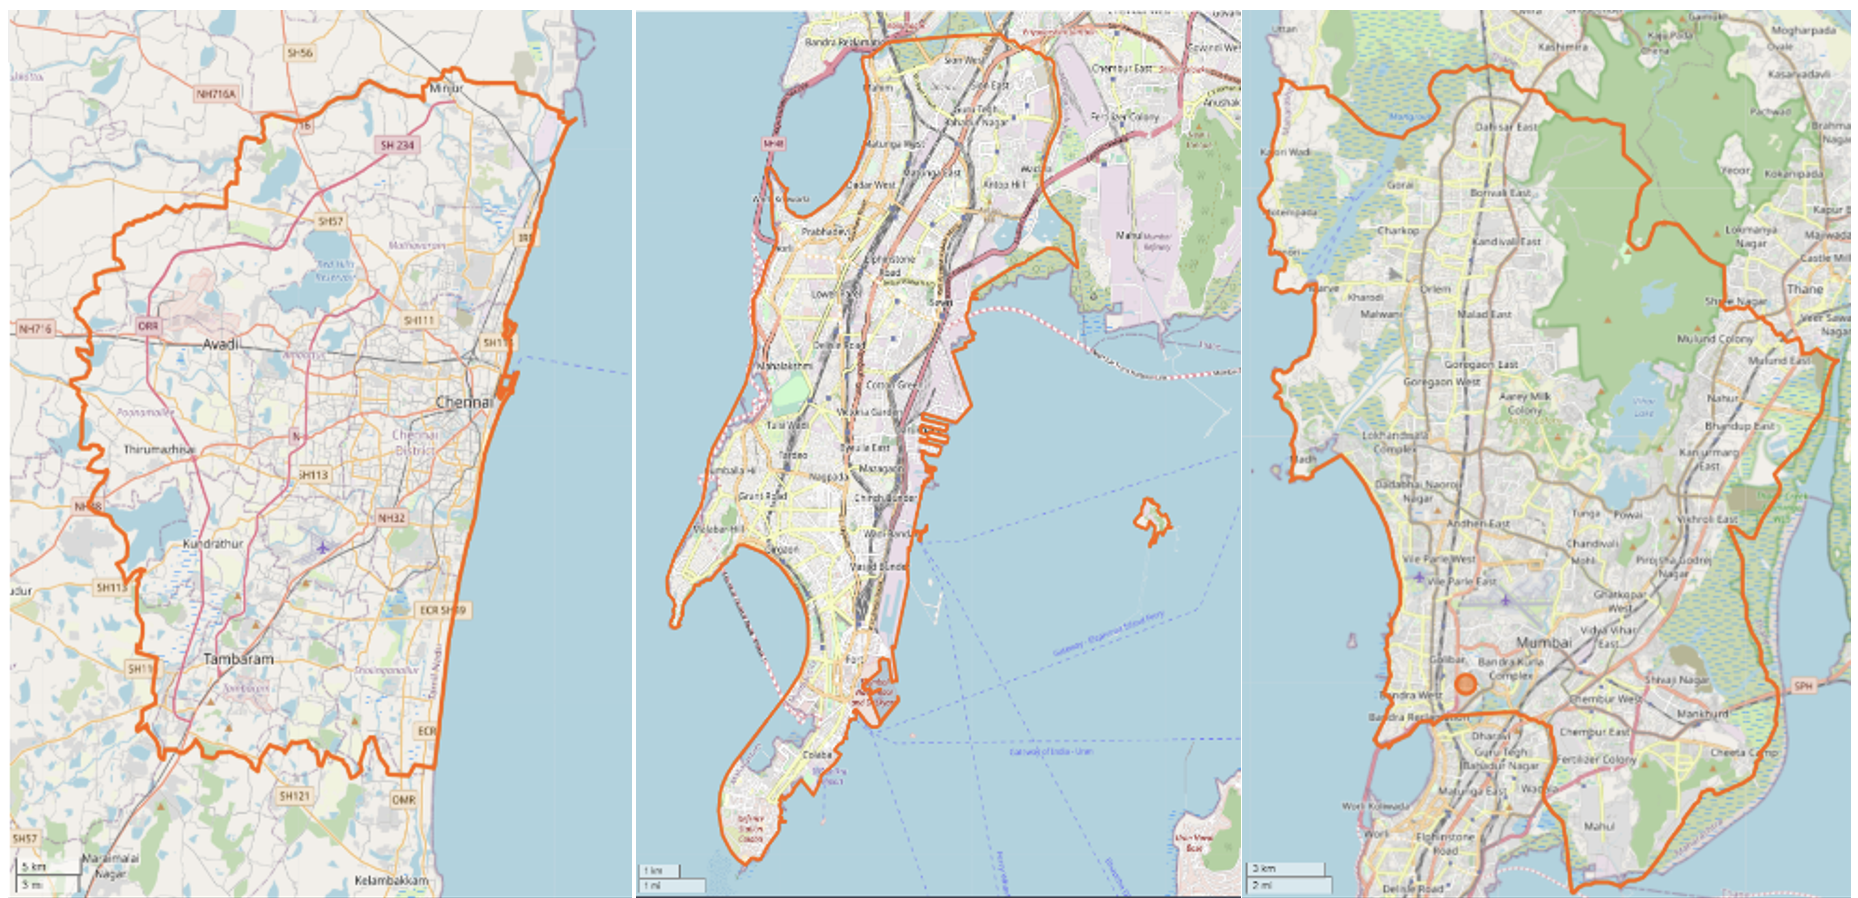 Maps of Mumbai